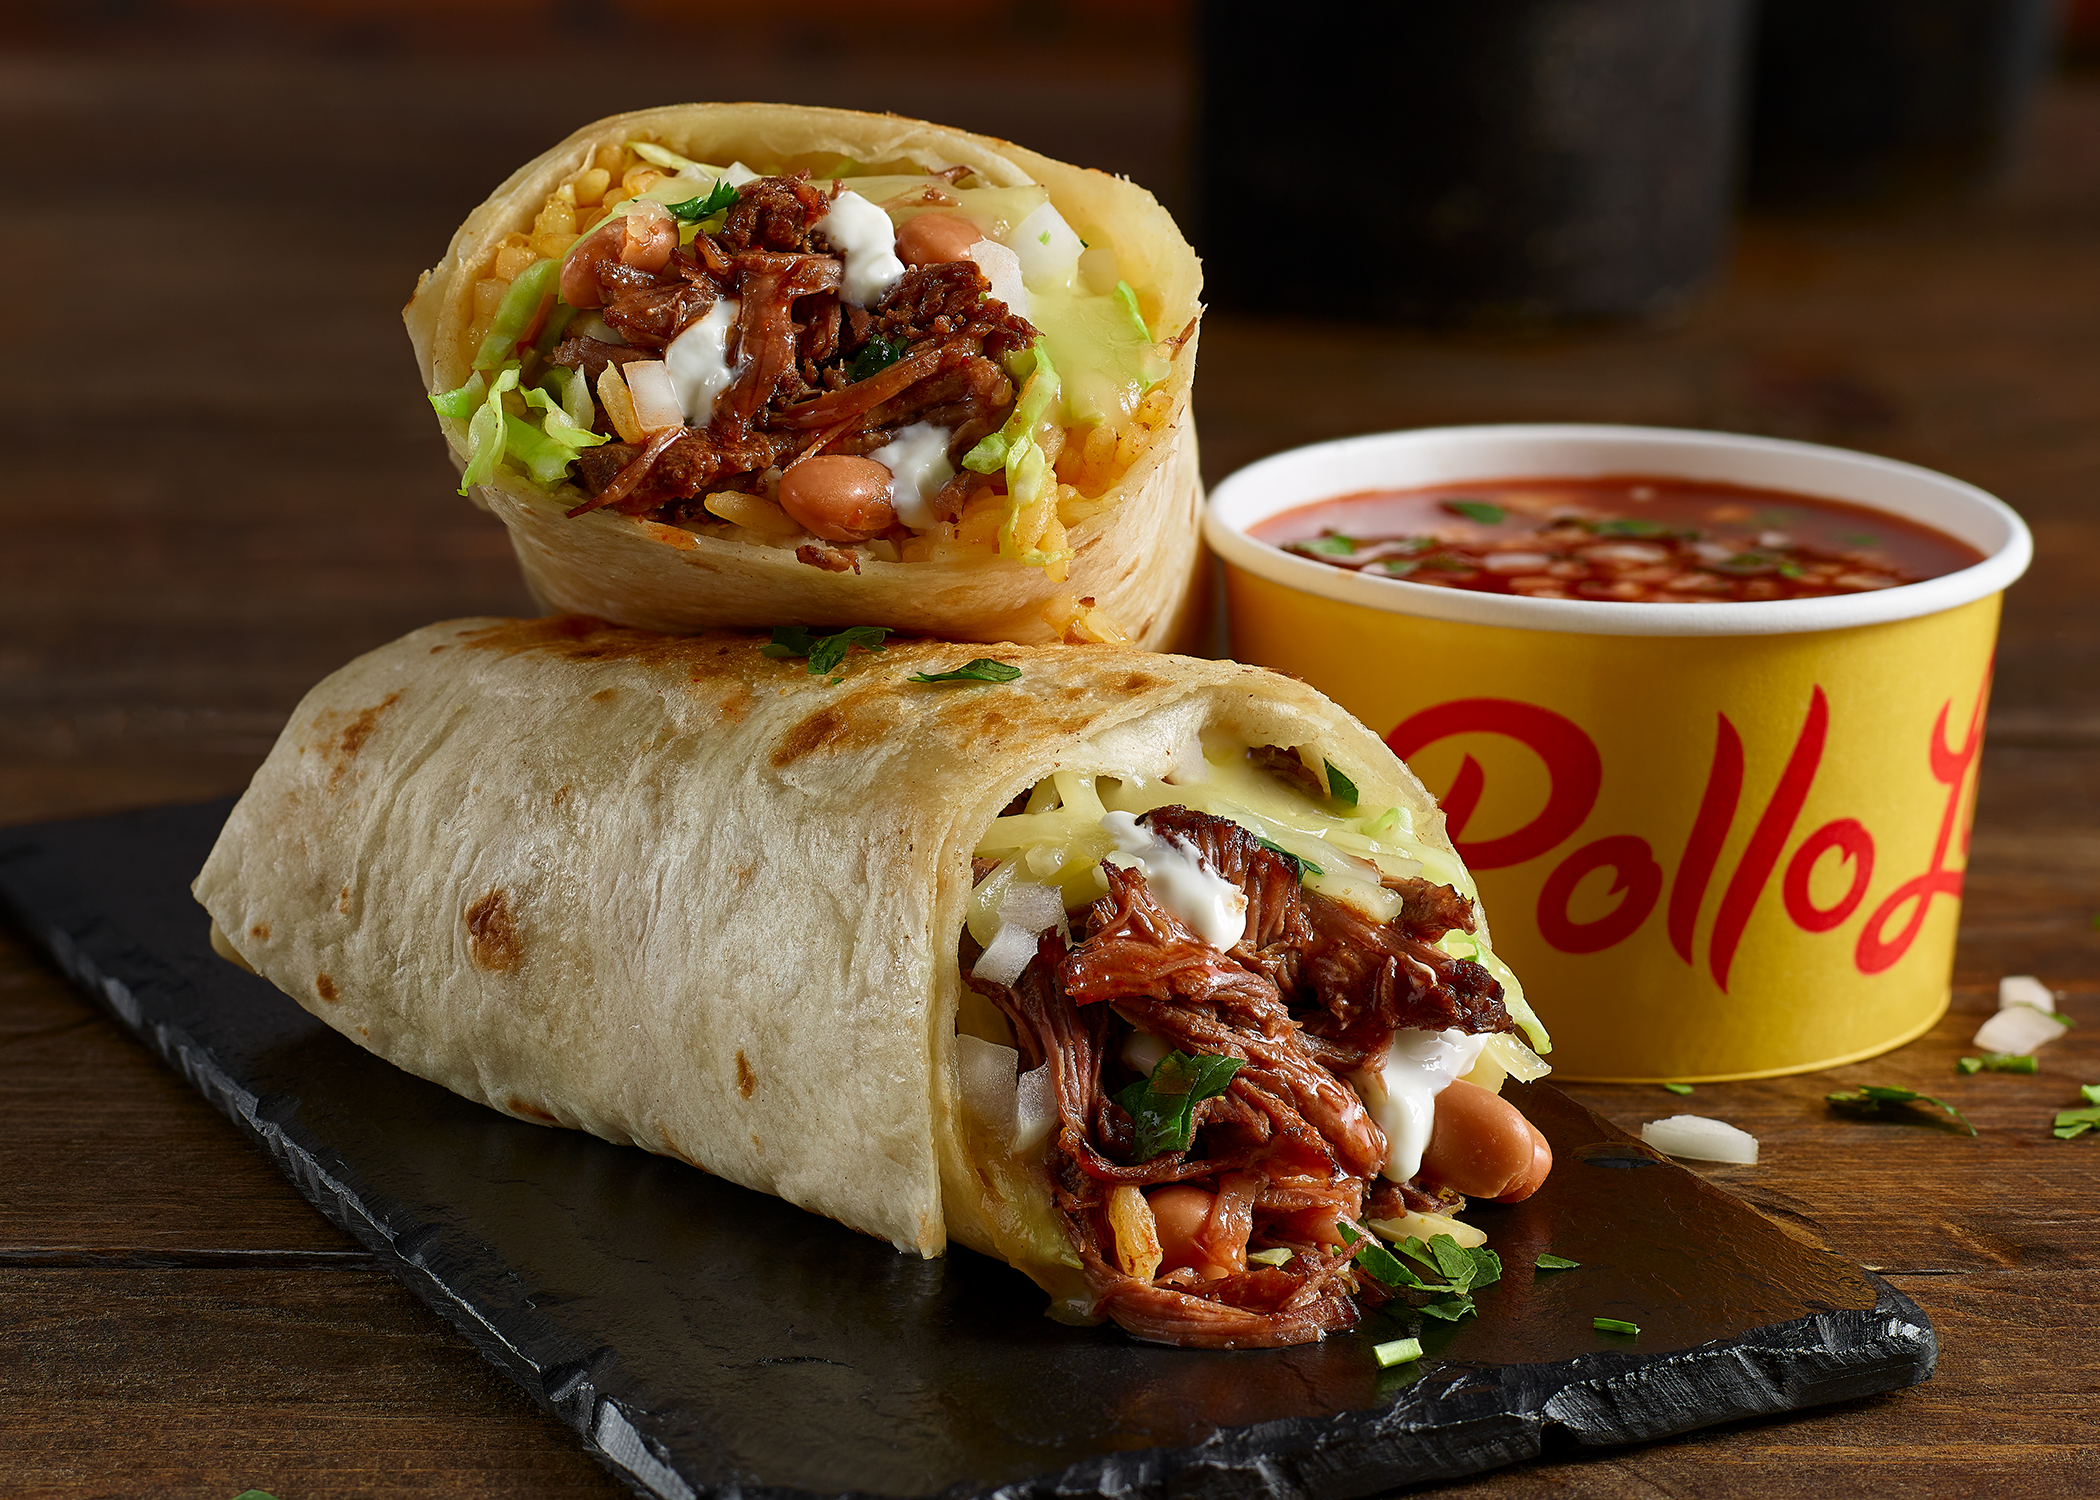 Calling All Burrito Lovers: El Pollo Loco Celebrates